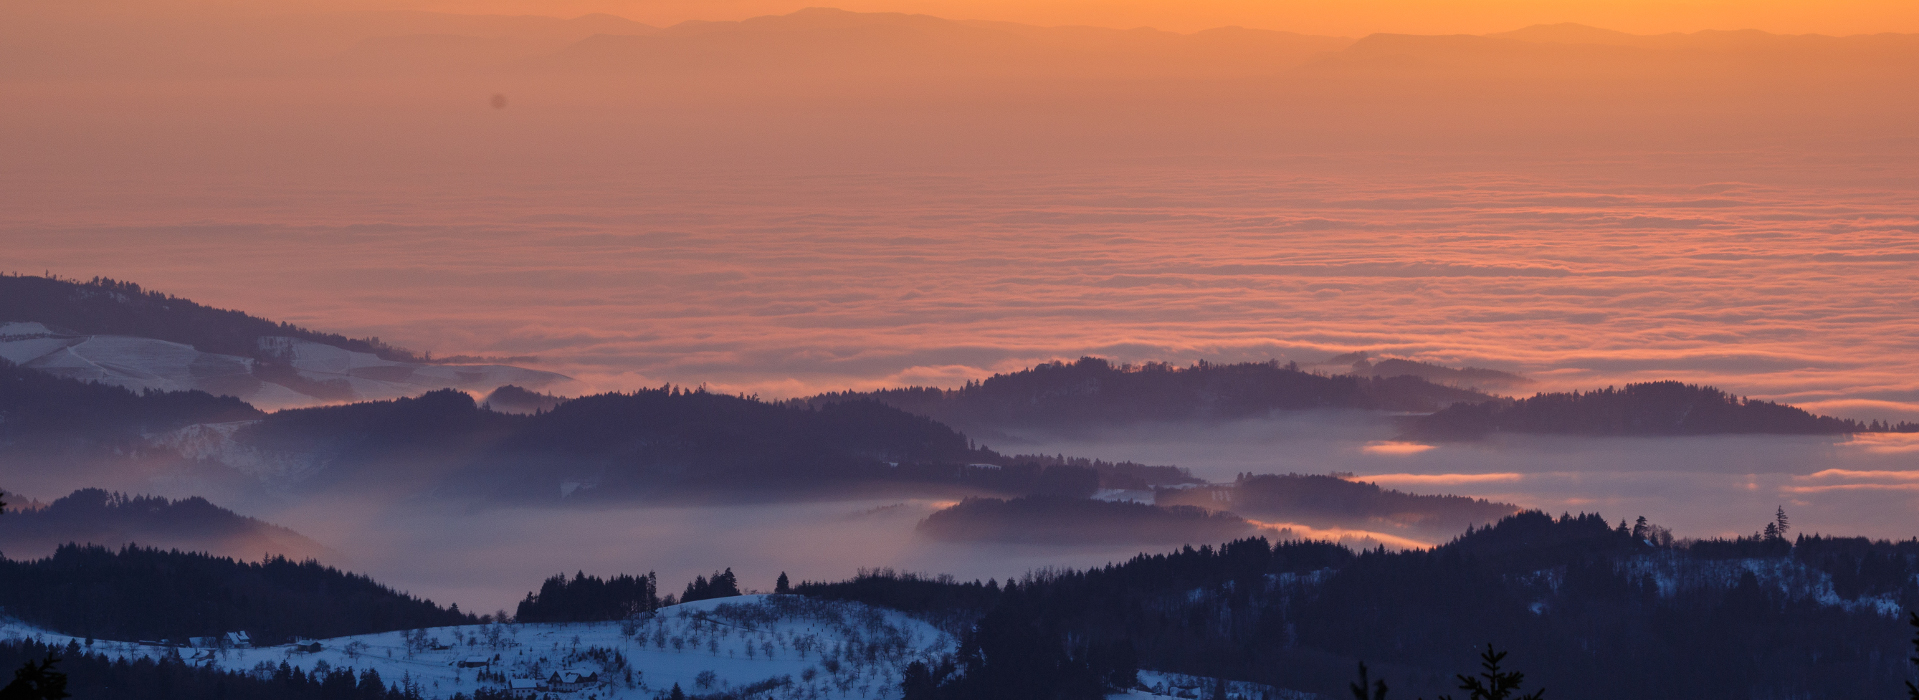 Ausblick über mehrere leicht verschneite Berggipfel in die mit dicken Wolken gefüllte Rheinebene. Zwischen den Berggipfeln hängen Nebelschleier, die Wolken werden vom Sonnenuntergang rötlich verfärbt.  